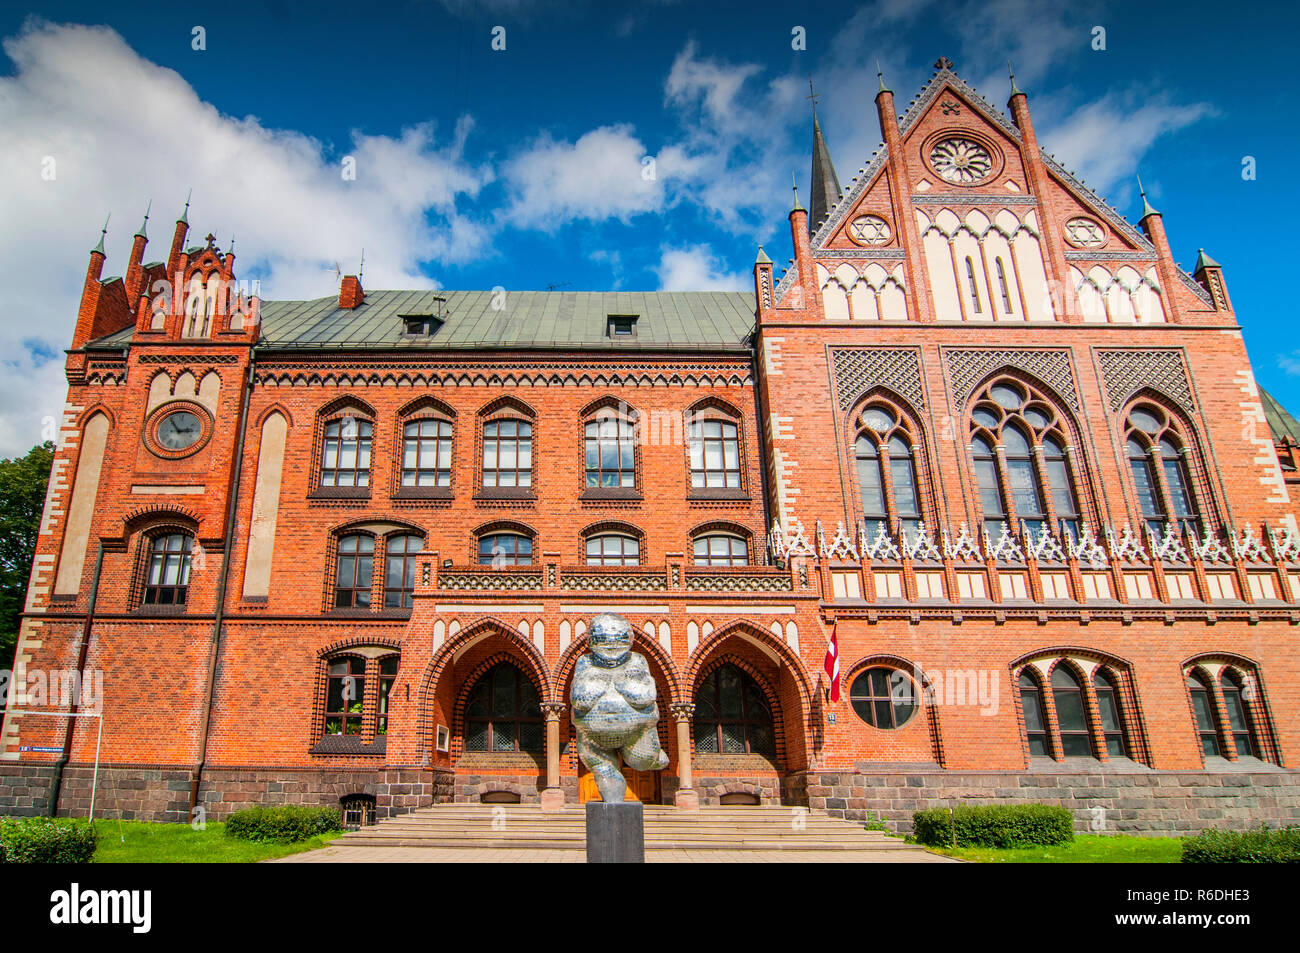 The Academy Of Art In Riga, Capital Of Latvia Stock Photo